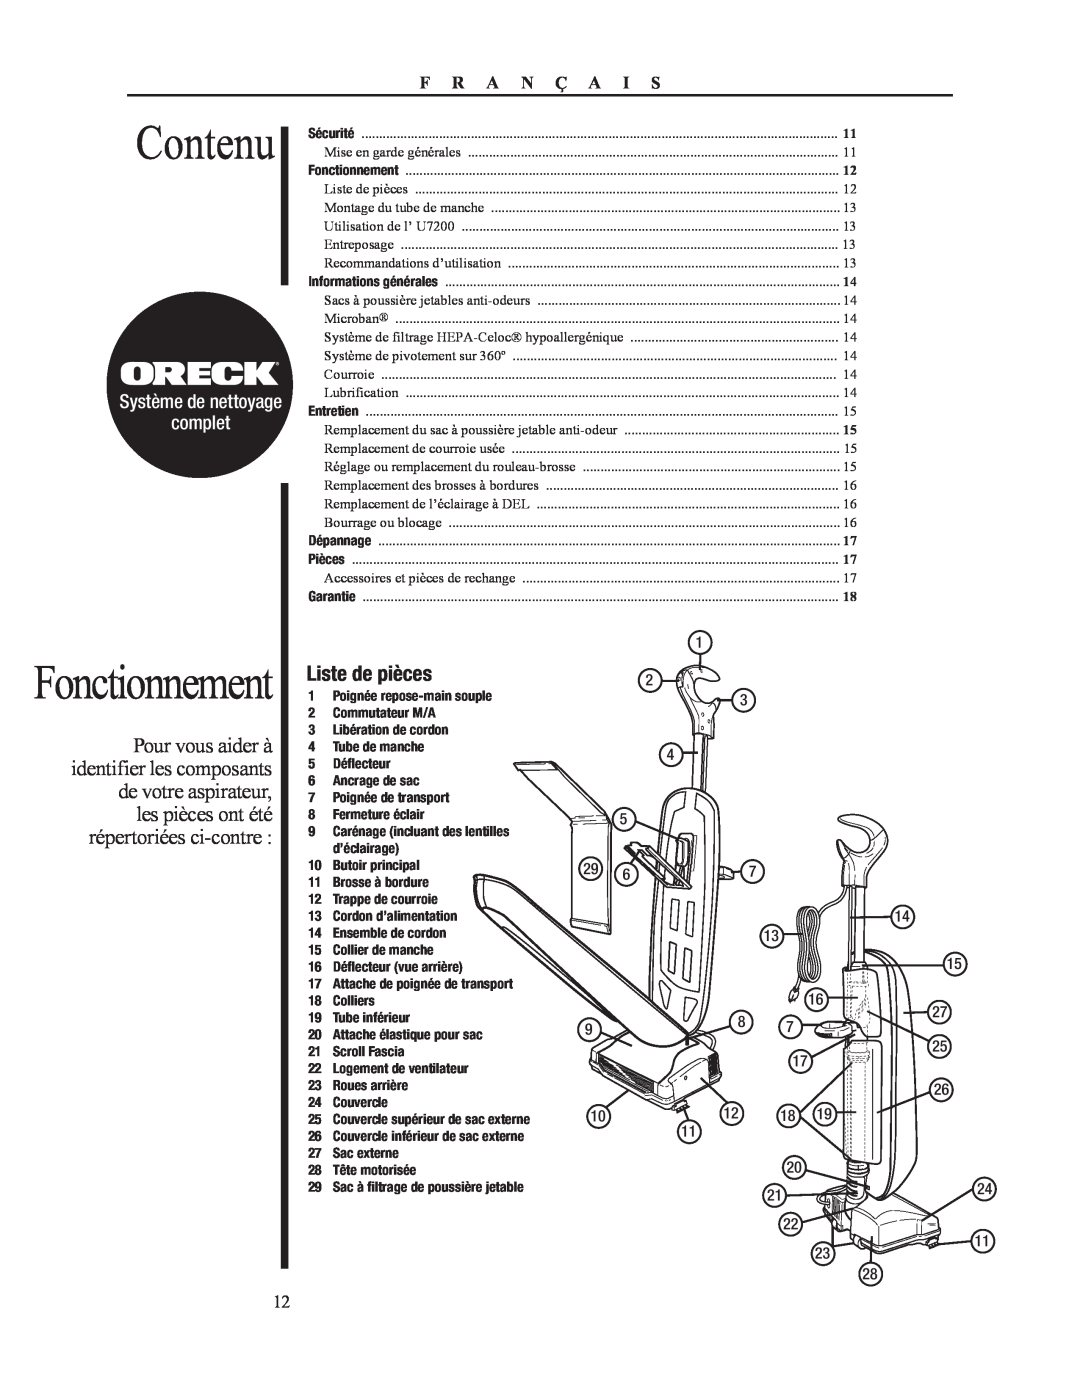 Oreck 79052-01REVA manual Contenu, Fonctionnement, Liste de pièces, complet, Système de nettoyage, F R A N Ç A I S 